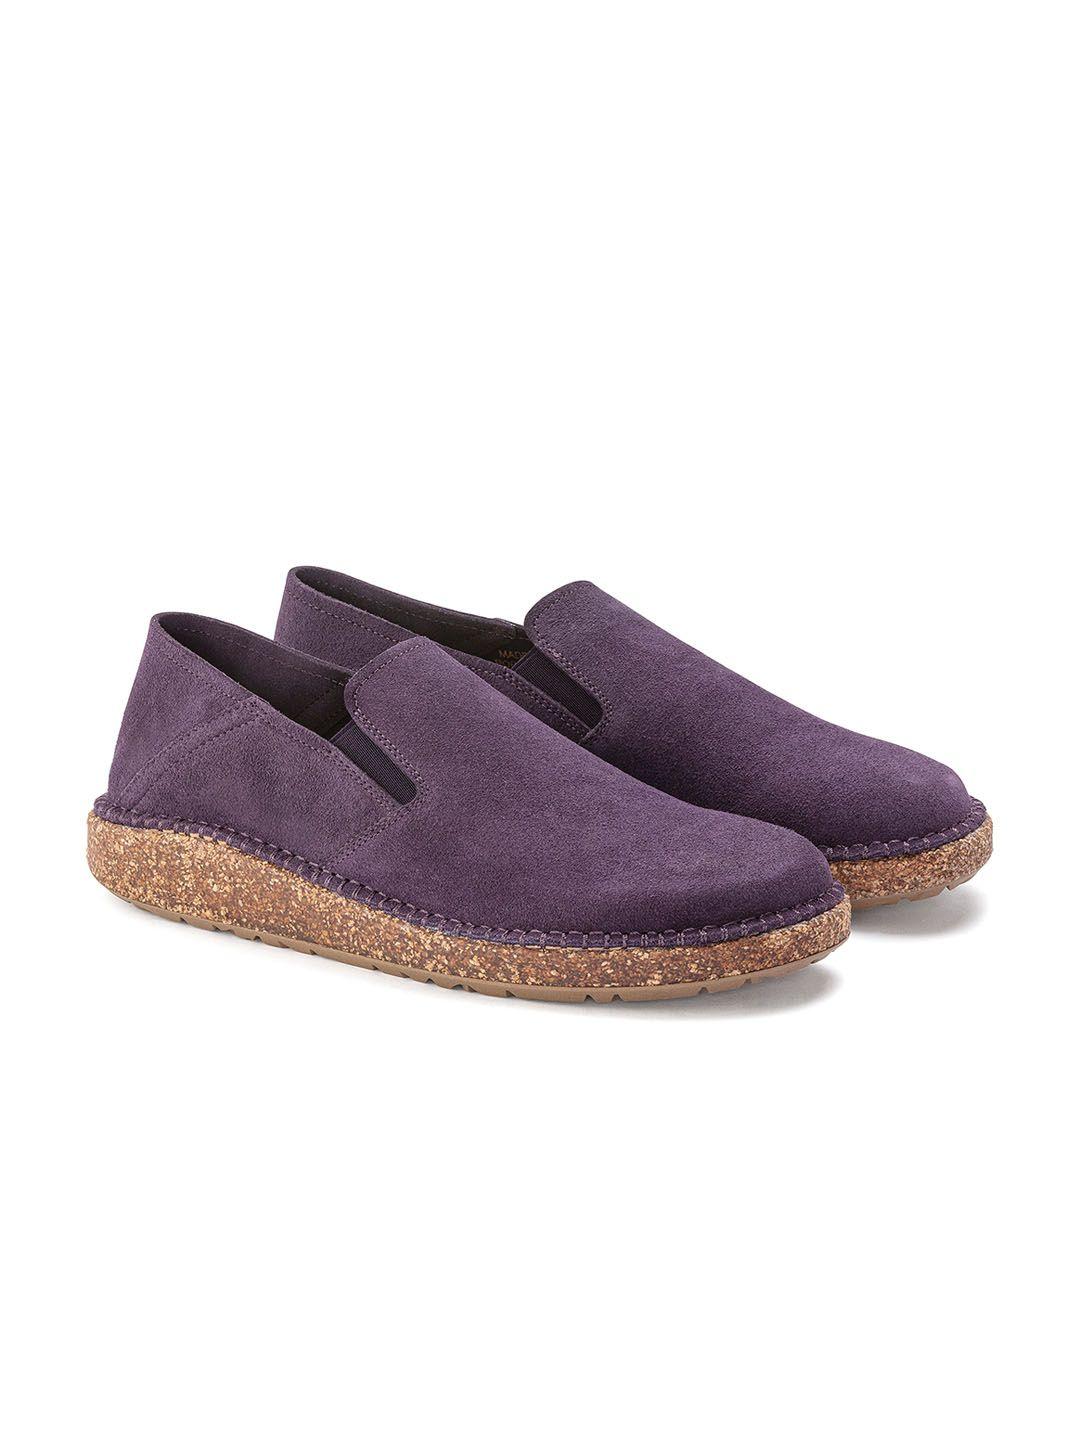 birkenstock women callan purple narrow width suede leather slip-on sneakers